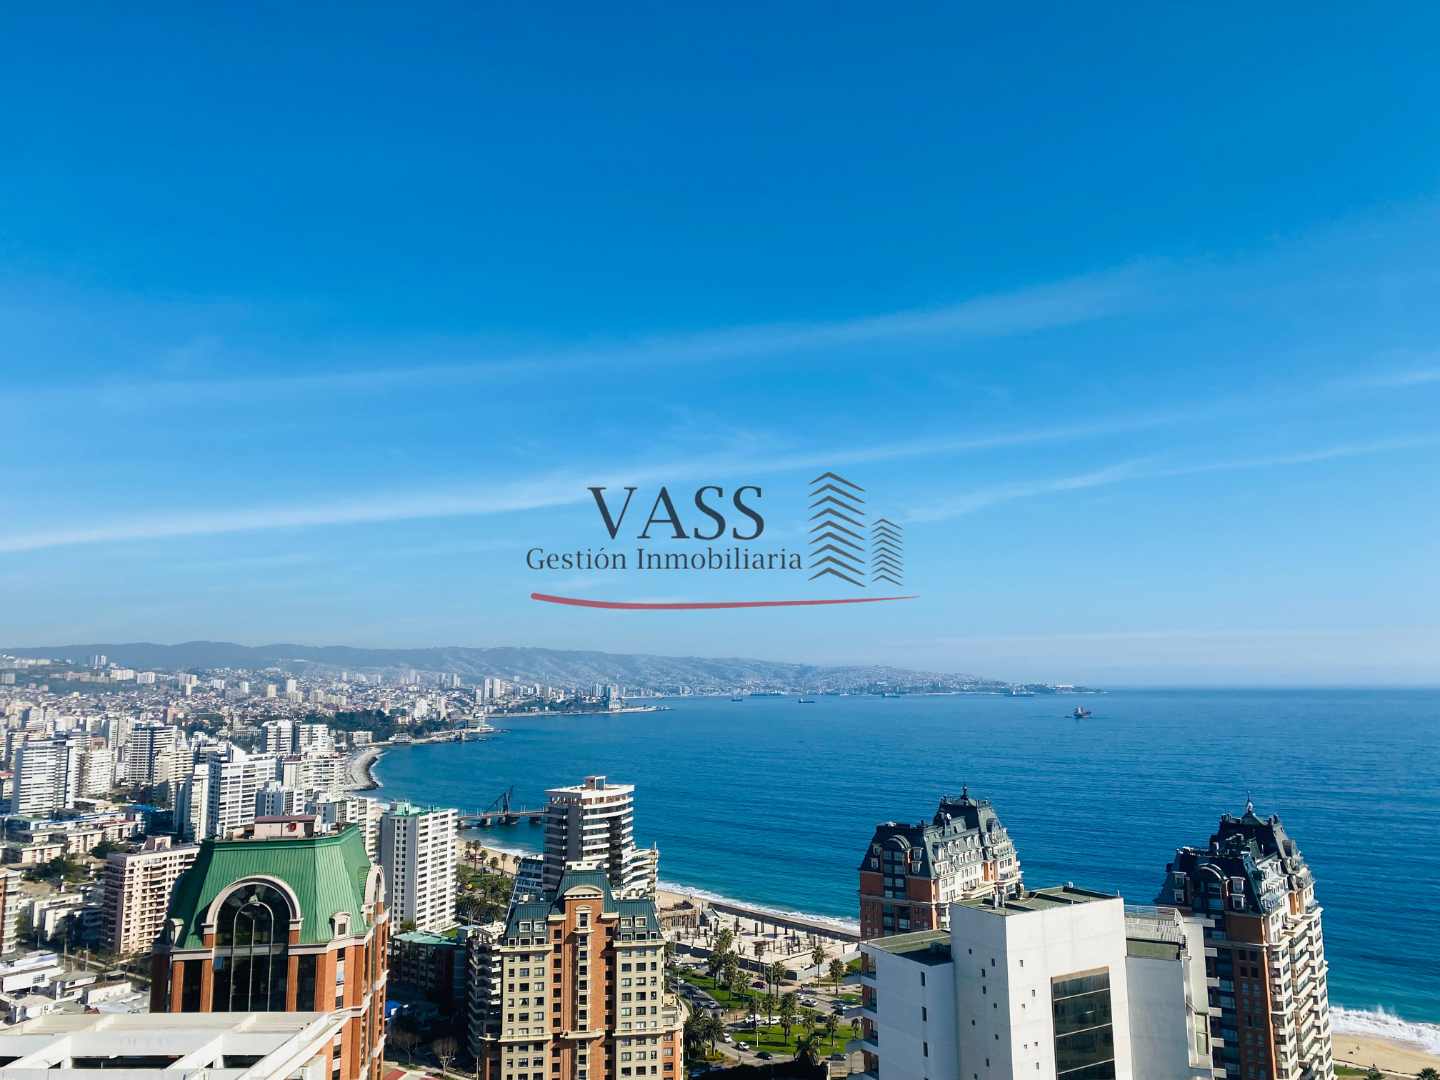 VASS Gestión Inmobiliaria vende departamento en exclusivo sector de Coraceros en Viña del Mar